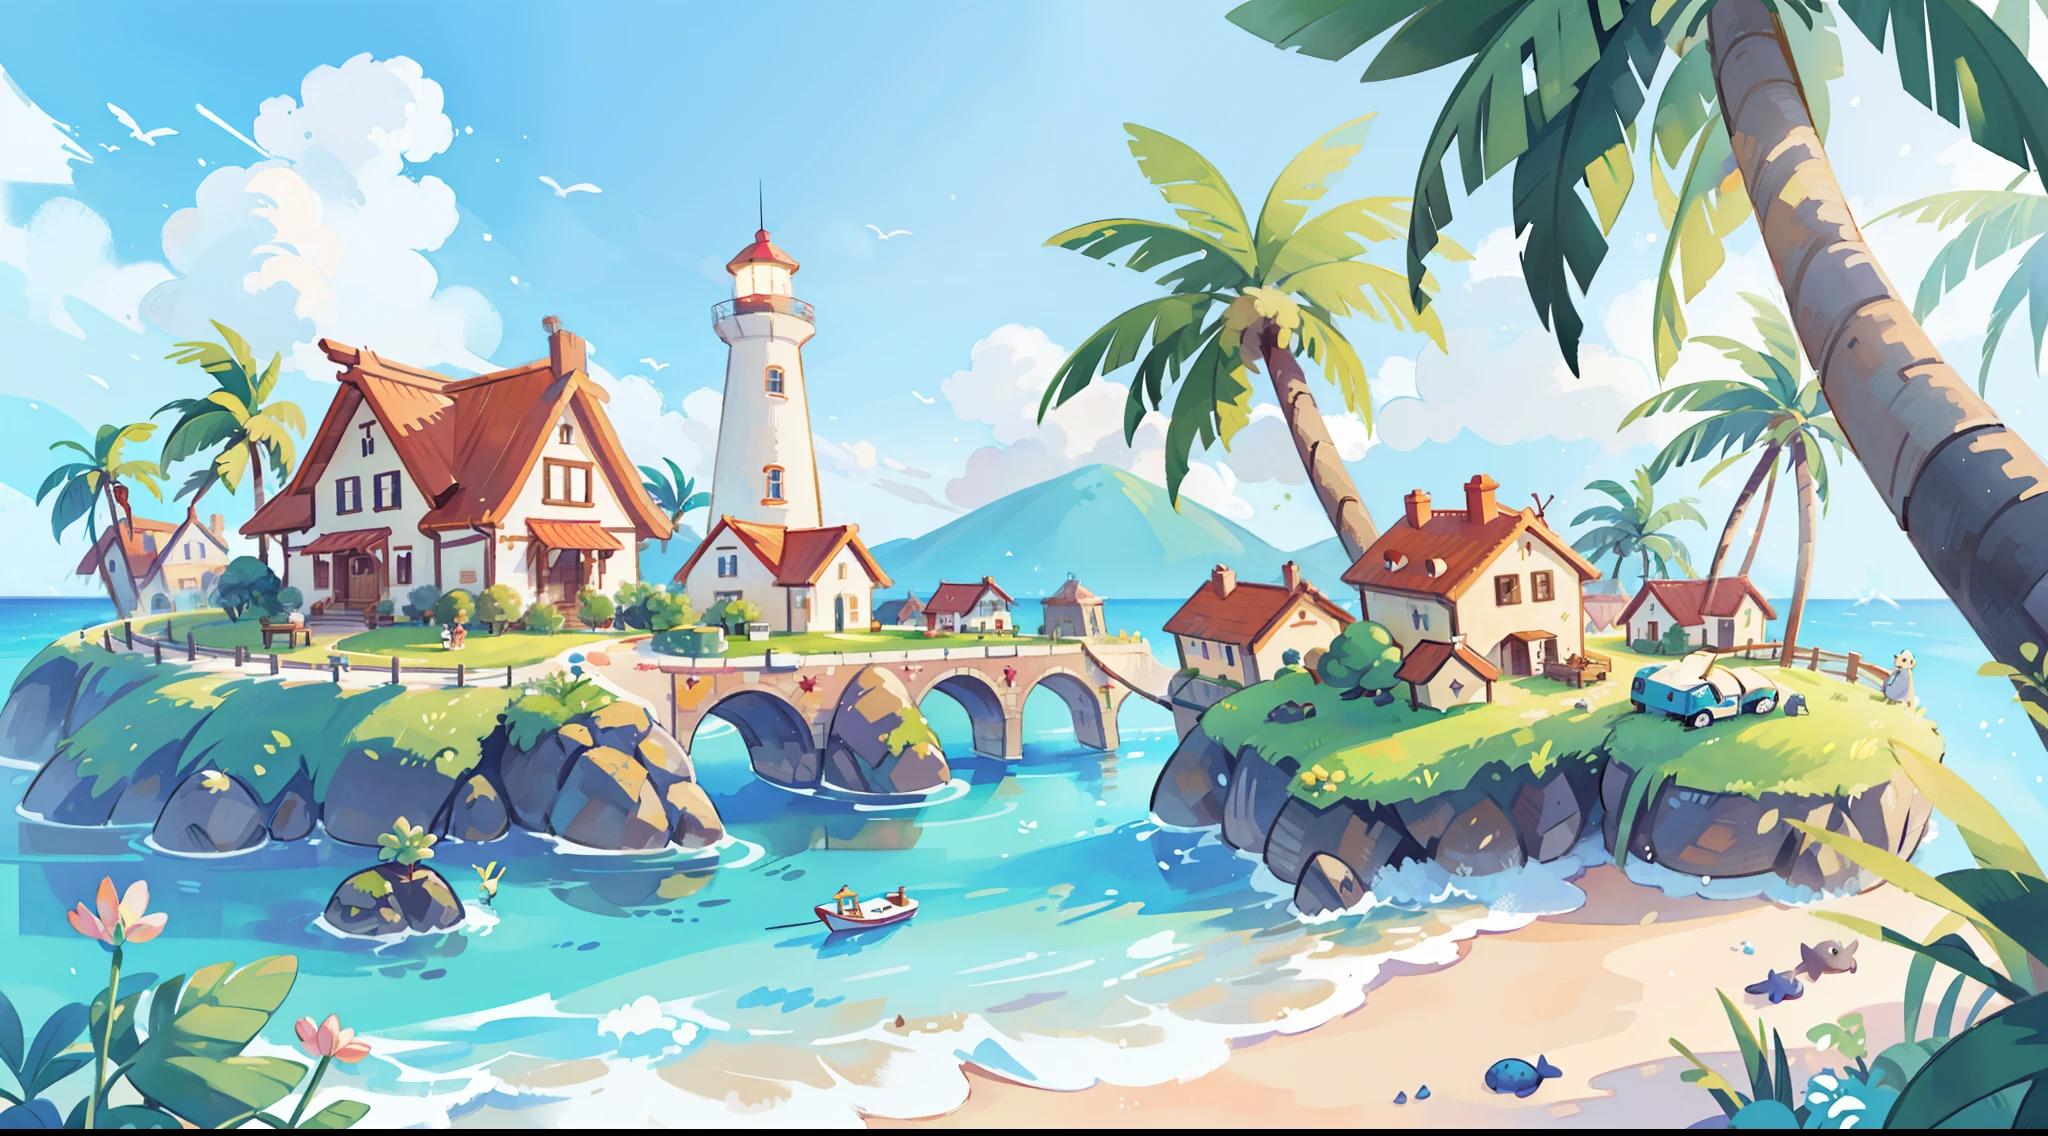 ((Bilderbuchillustration)), Ozean Fantasie, Aquarellillustration, wunderlich, warme Farben, Dorf, Palmen, Häuser, riesiger Leuchtturm, ((Meisterwerk)), sehr detaillierte Umgebung